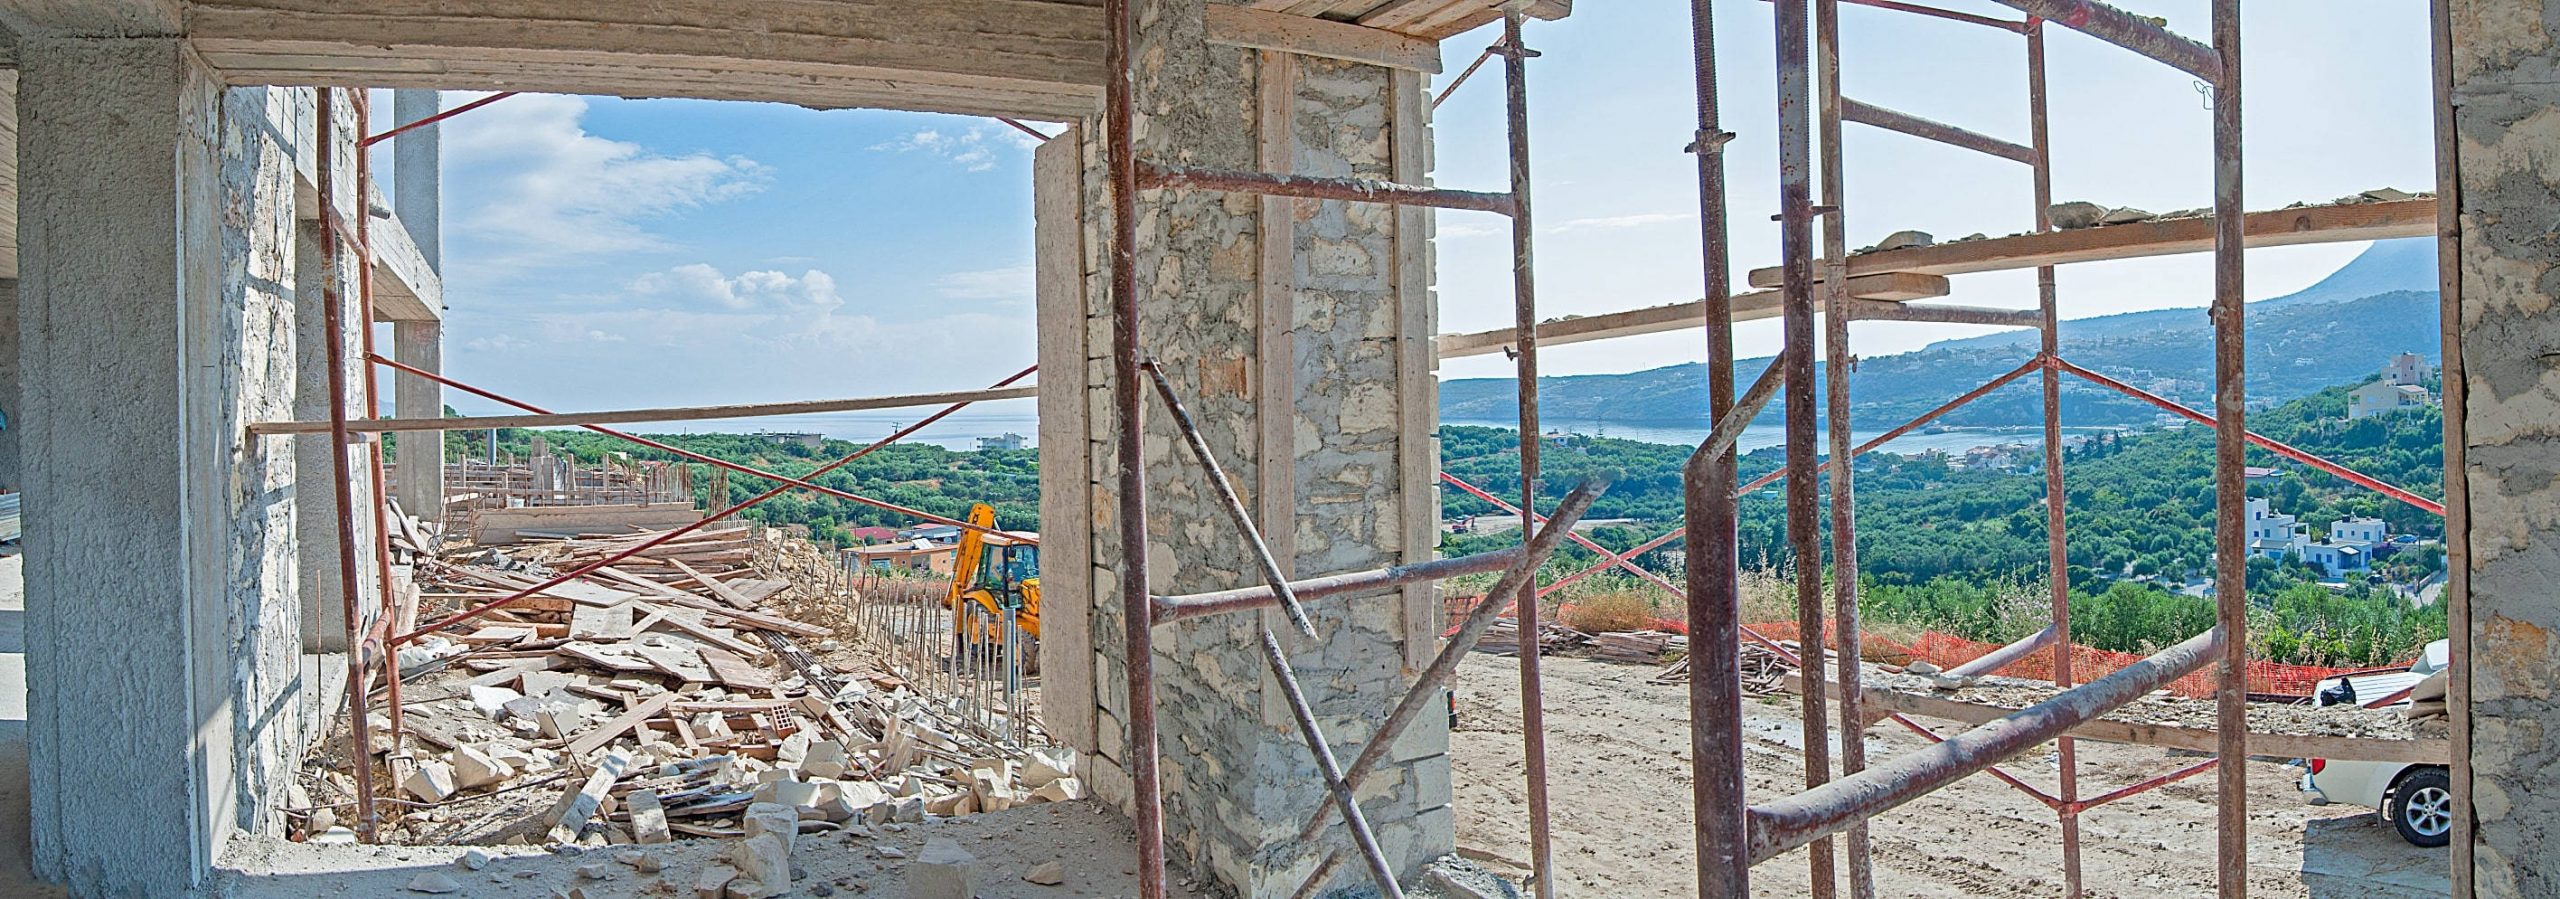 αποπεράτωση κατοικίας και ανακαίνιση σπιτιού Χανιά Κρήτης- Κυριακίδης